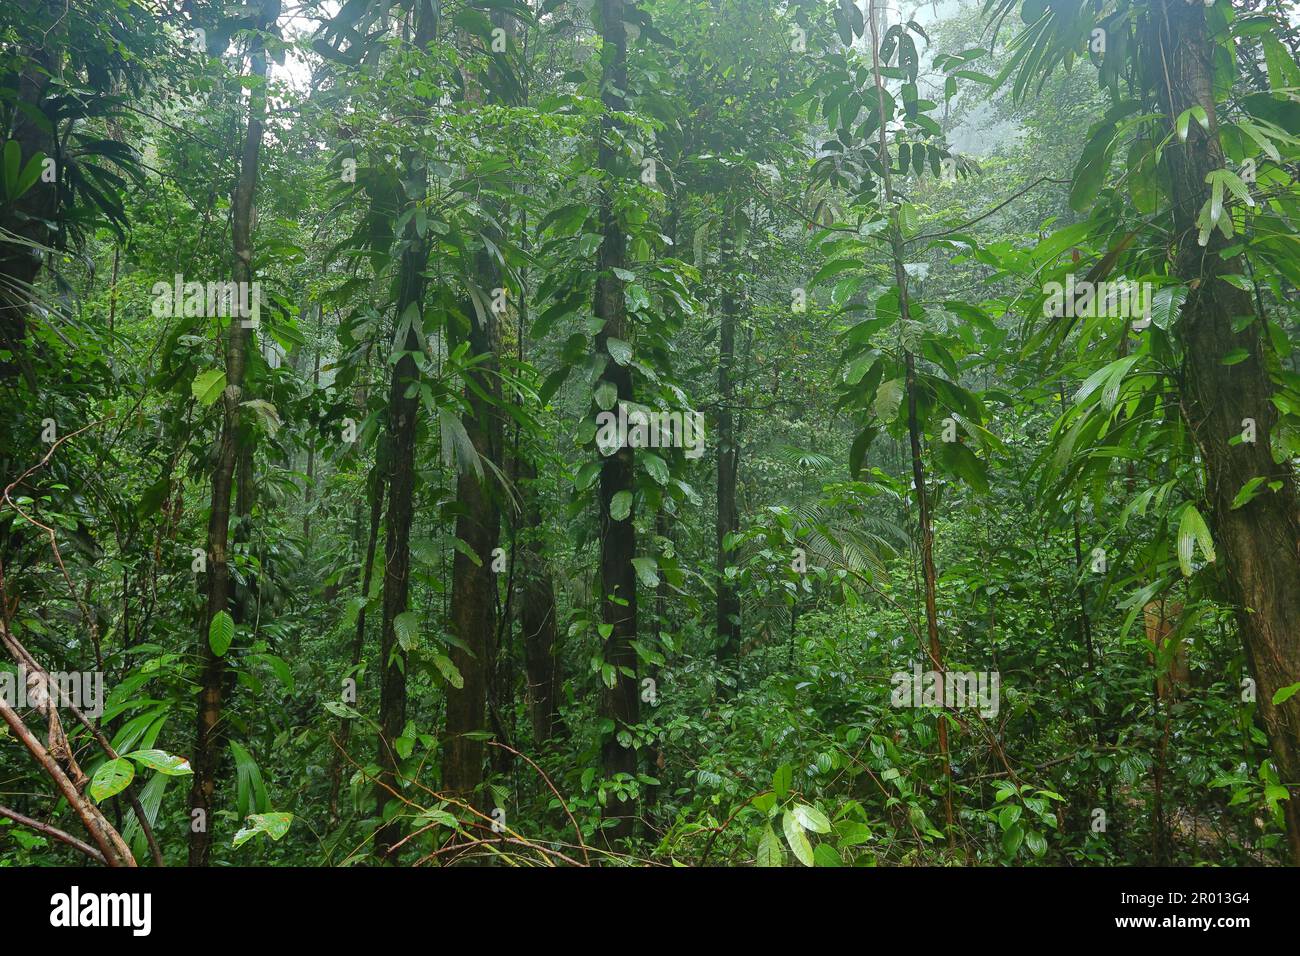 Das Innere des Amazonas-Regenwaldes in Französisch-Guayana. Primärer Regenwald, Amazonien. Brasilianischer Dschungel, Bäume im Regenwald. Stockfoto